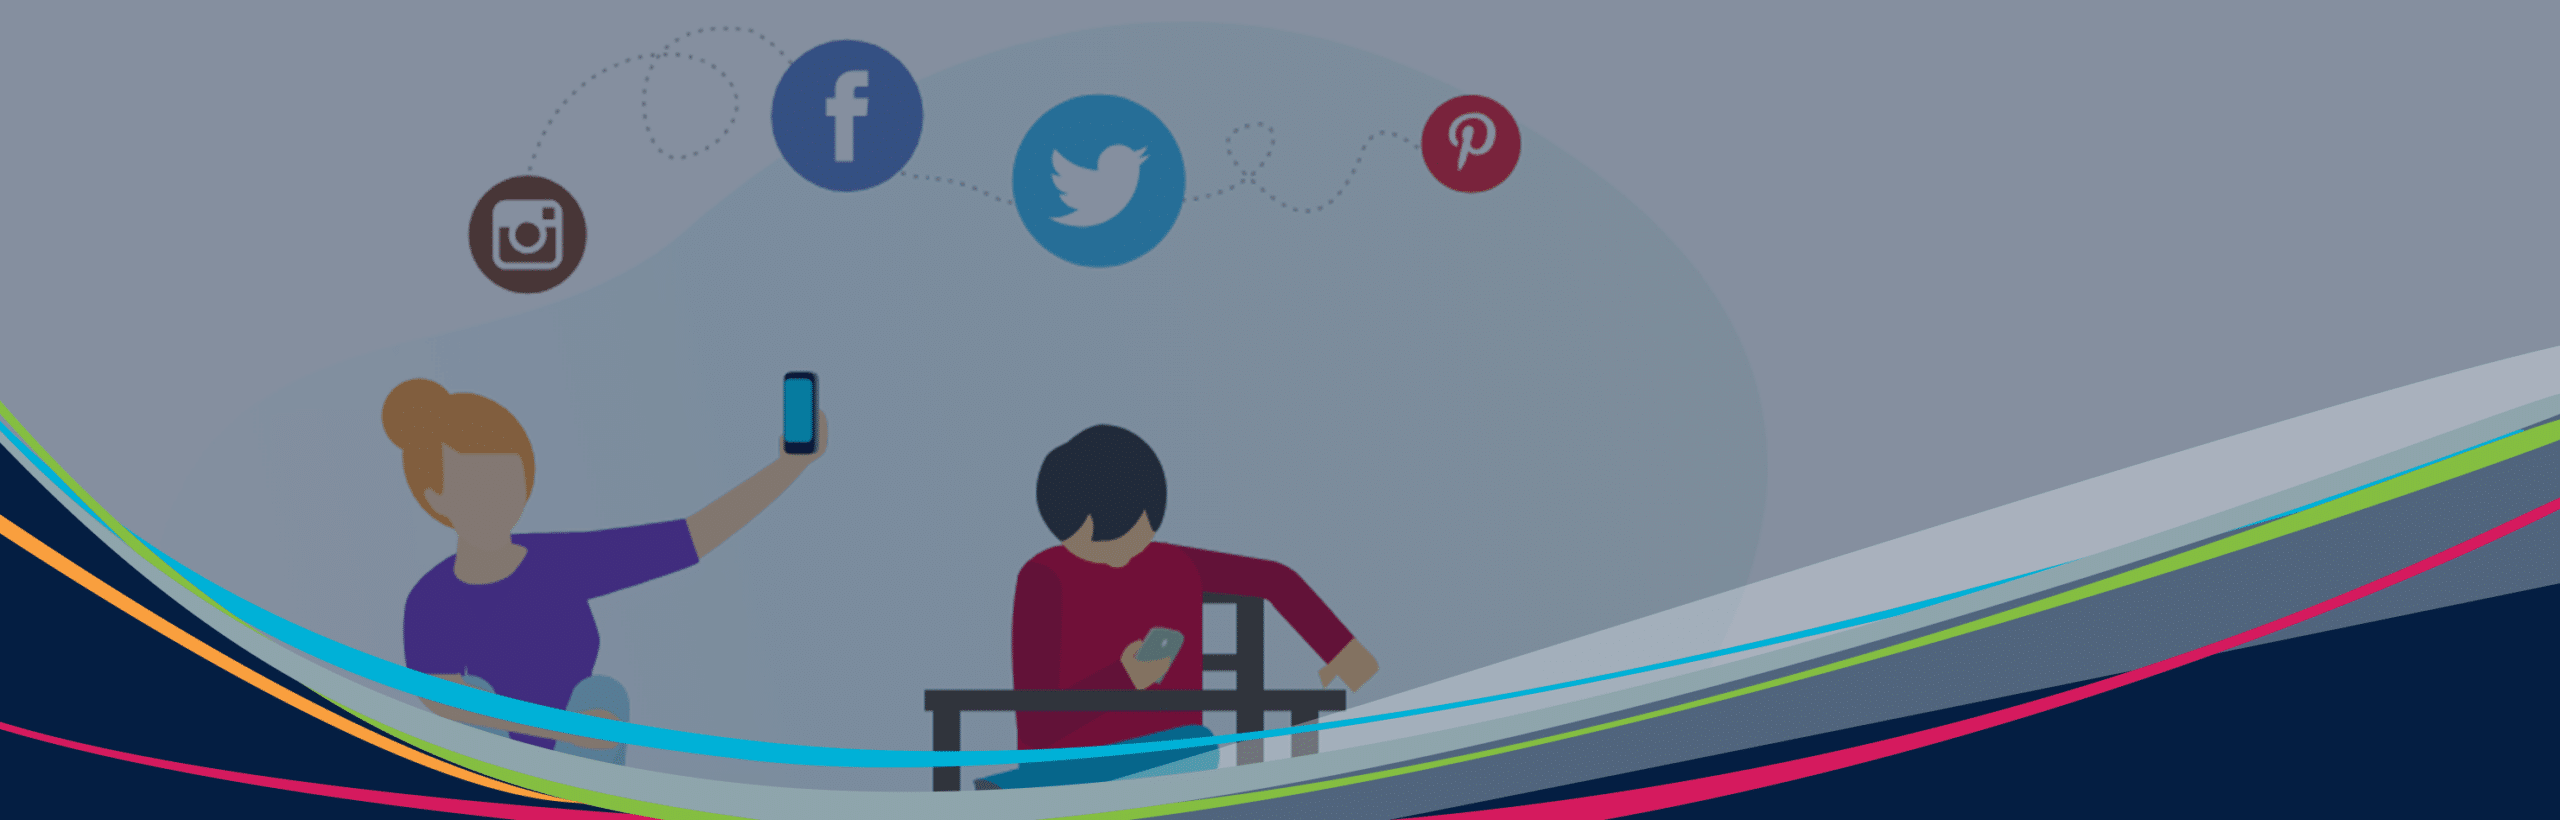 Hero illustreret grafik af elever med enheder og sociale medier ikoner svævende i baggrunden